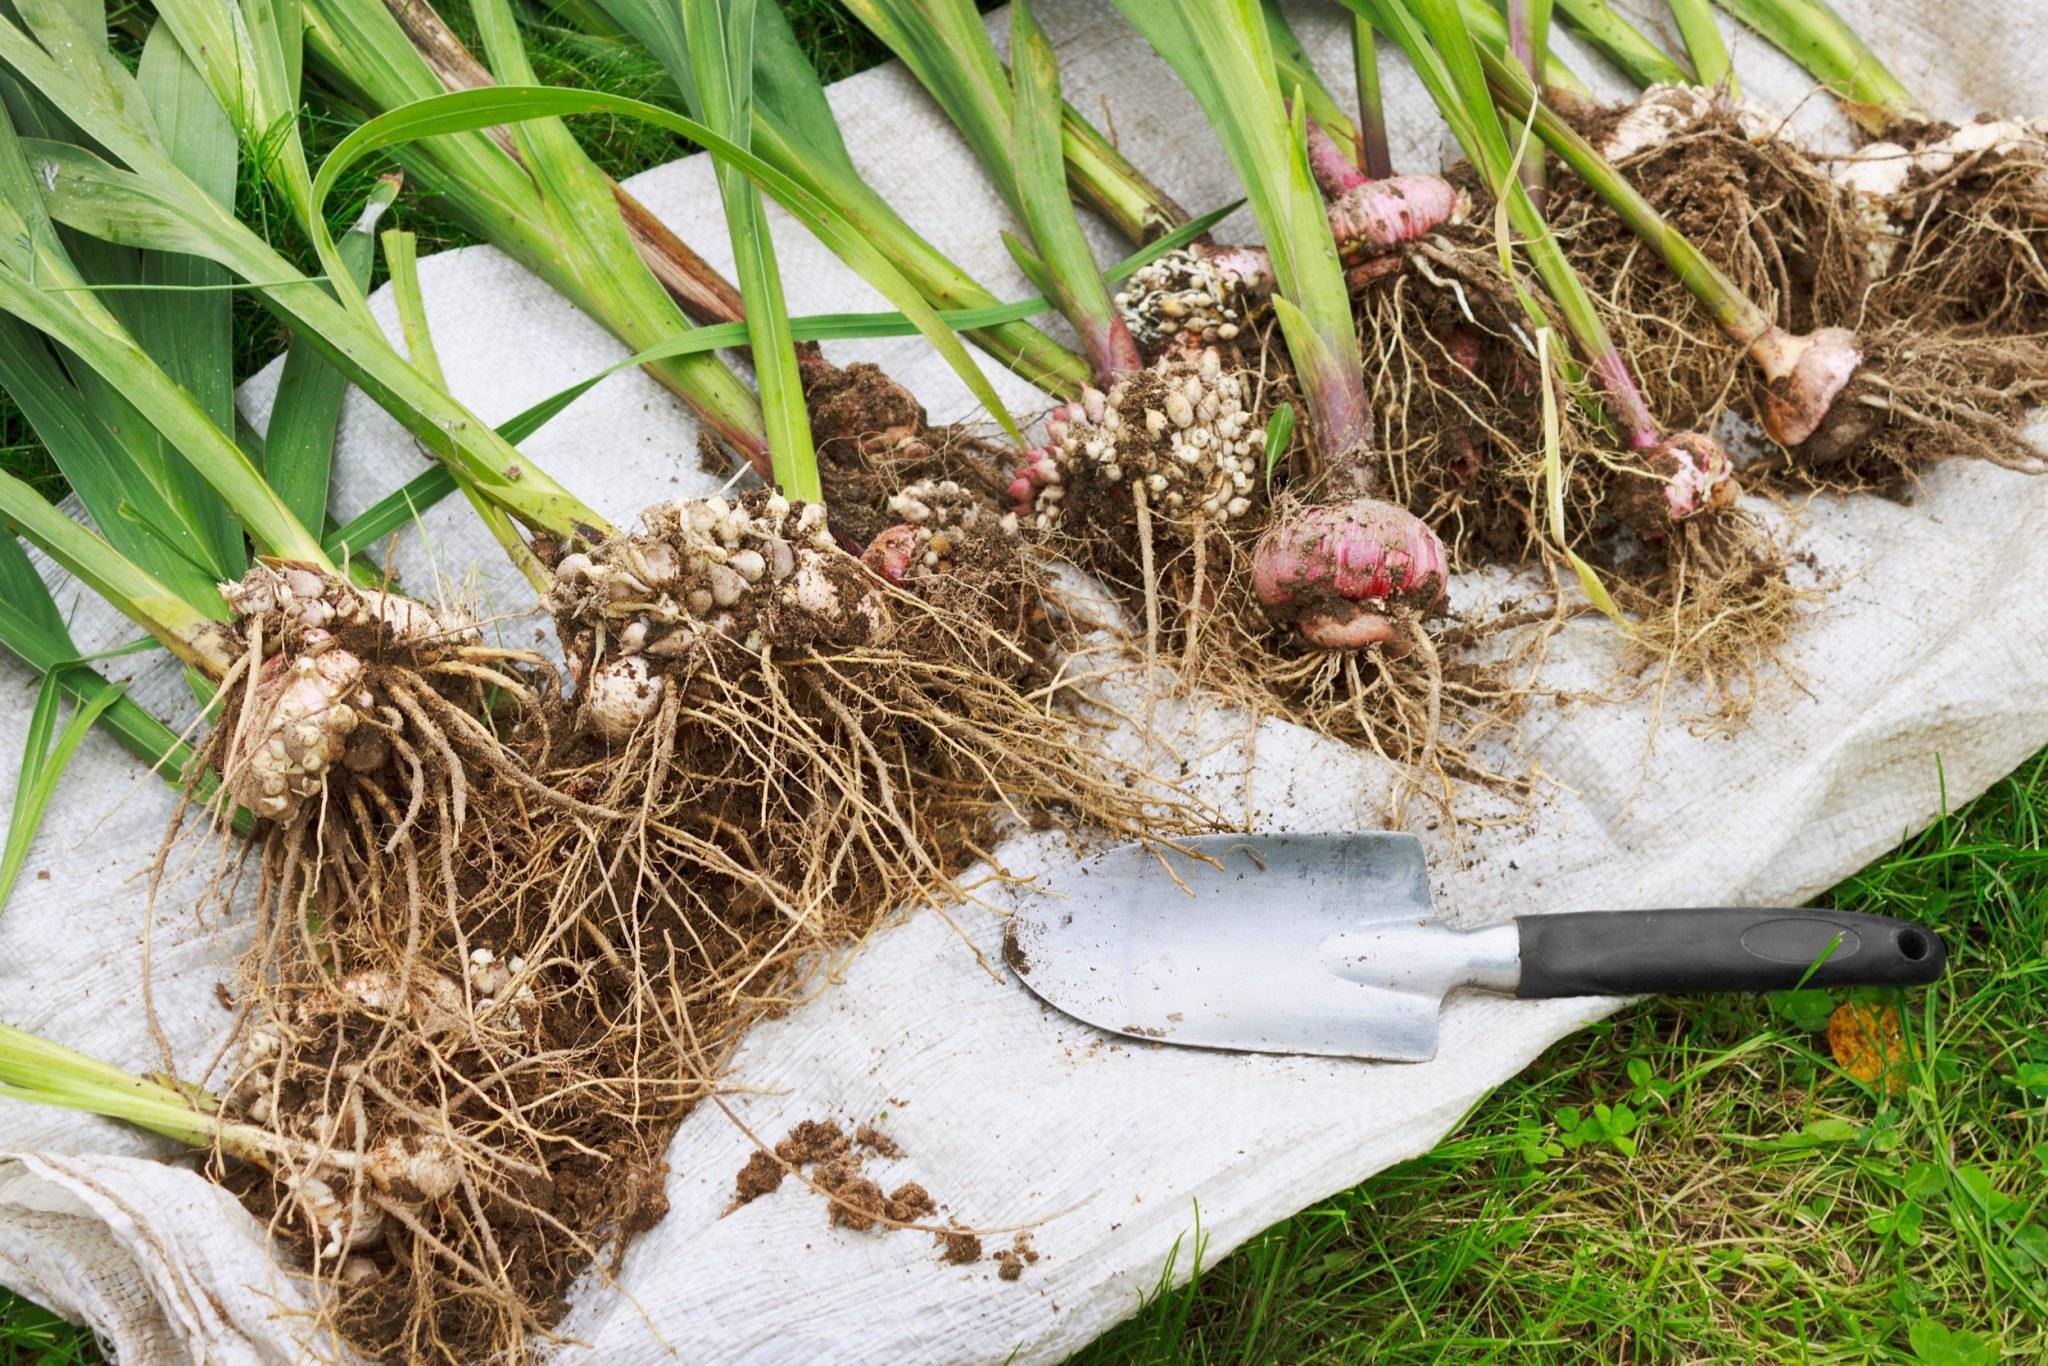 Как хранить луковицы тюльпанов до посадки осенью или весной в домашних условиях